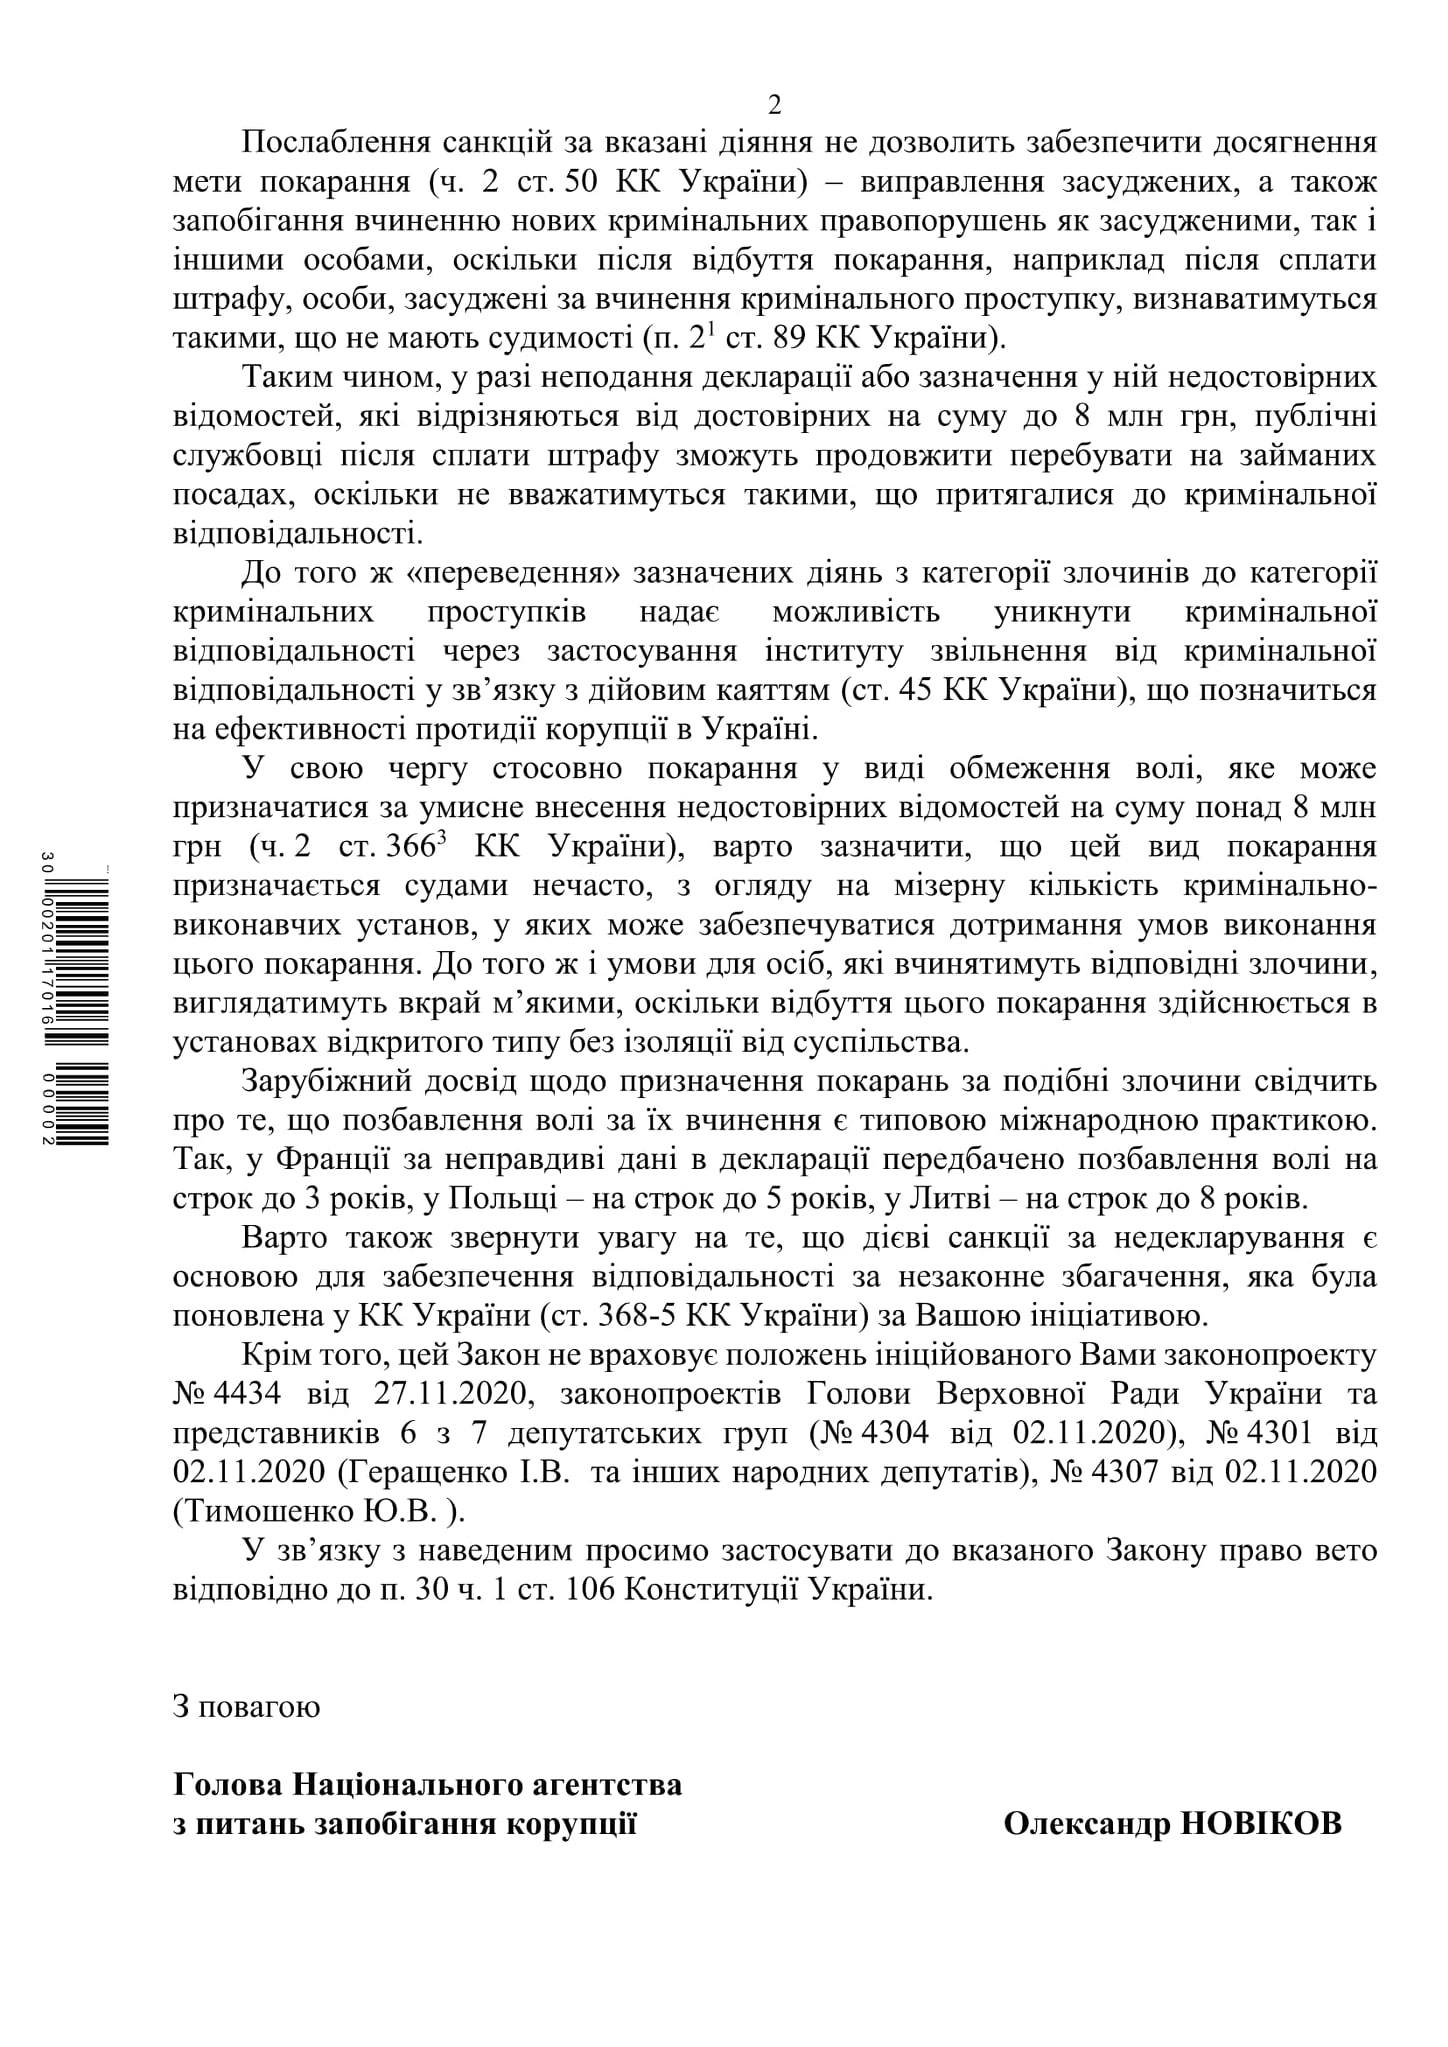 НАПК просит Зеленского ветировать законопроект о е-декларациях. Скан: НАПК